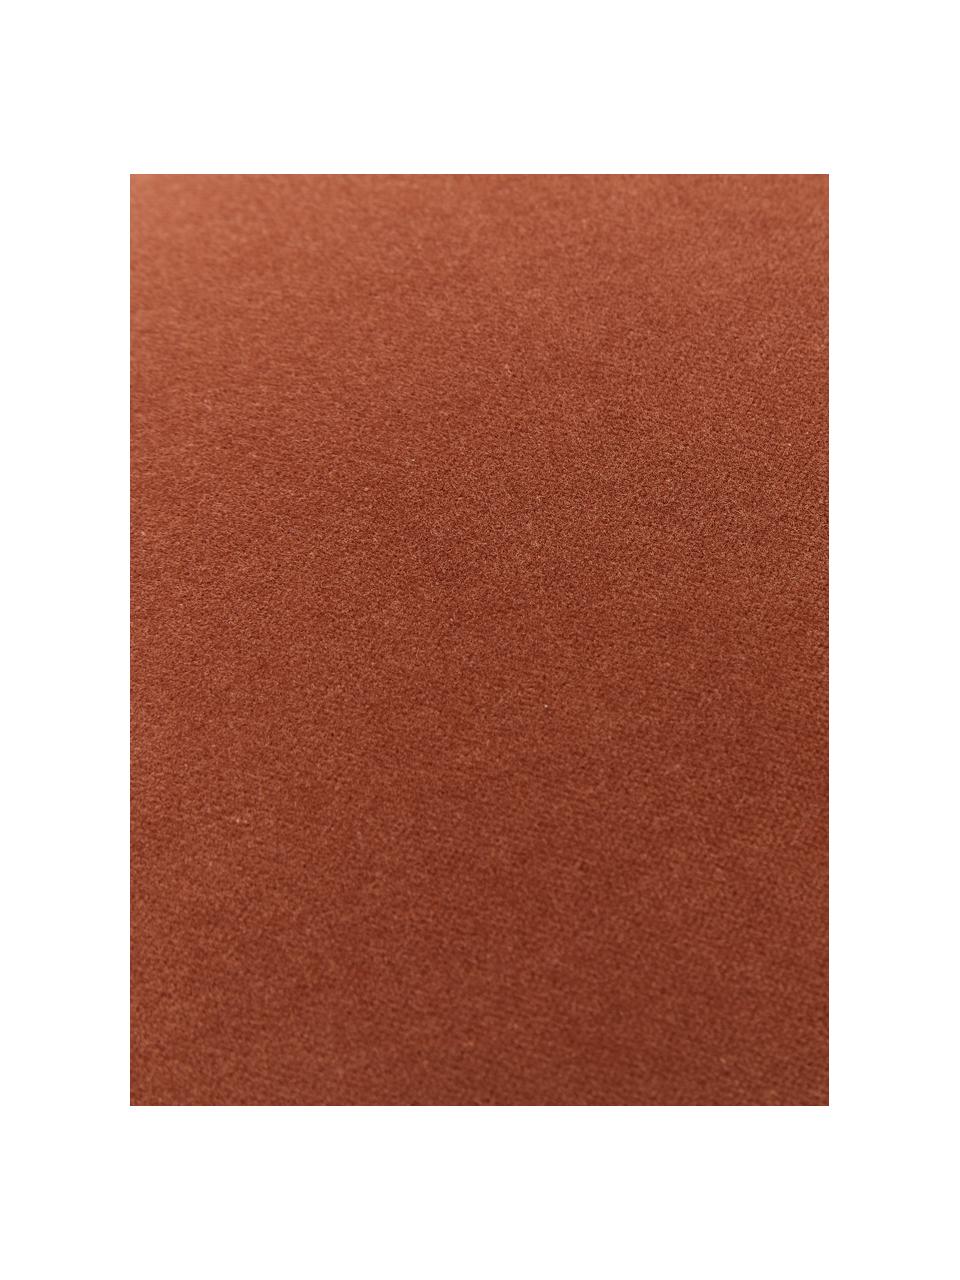 Einfarbige Samt-Kissenhülle Dana in Terrakotta, 100% Baumwollsamt, Terrakotta, B 30 x L 50 cm